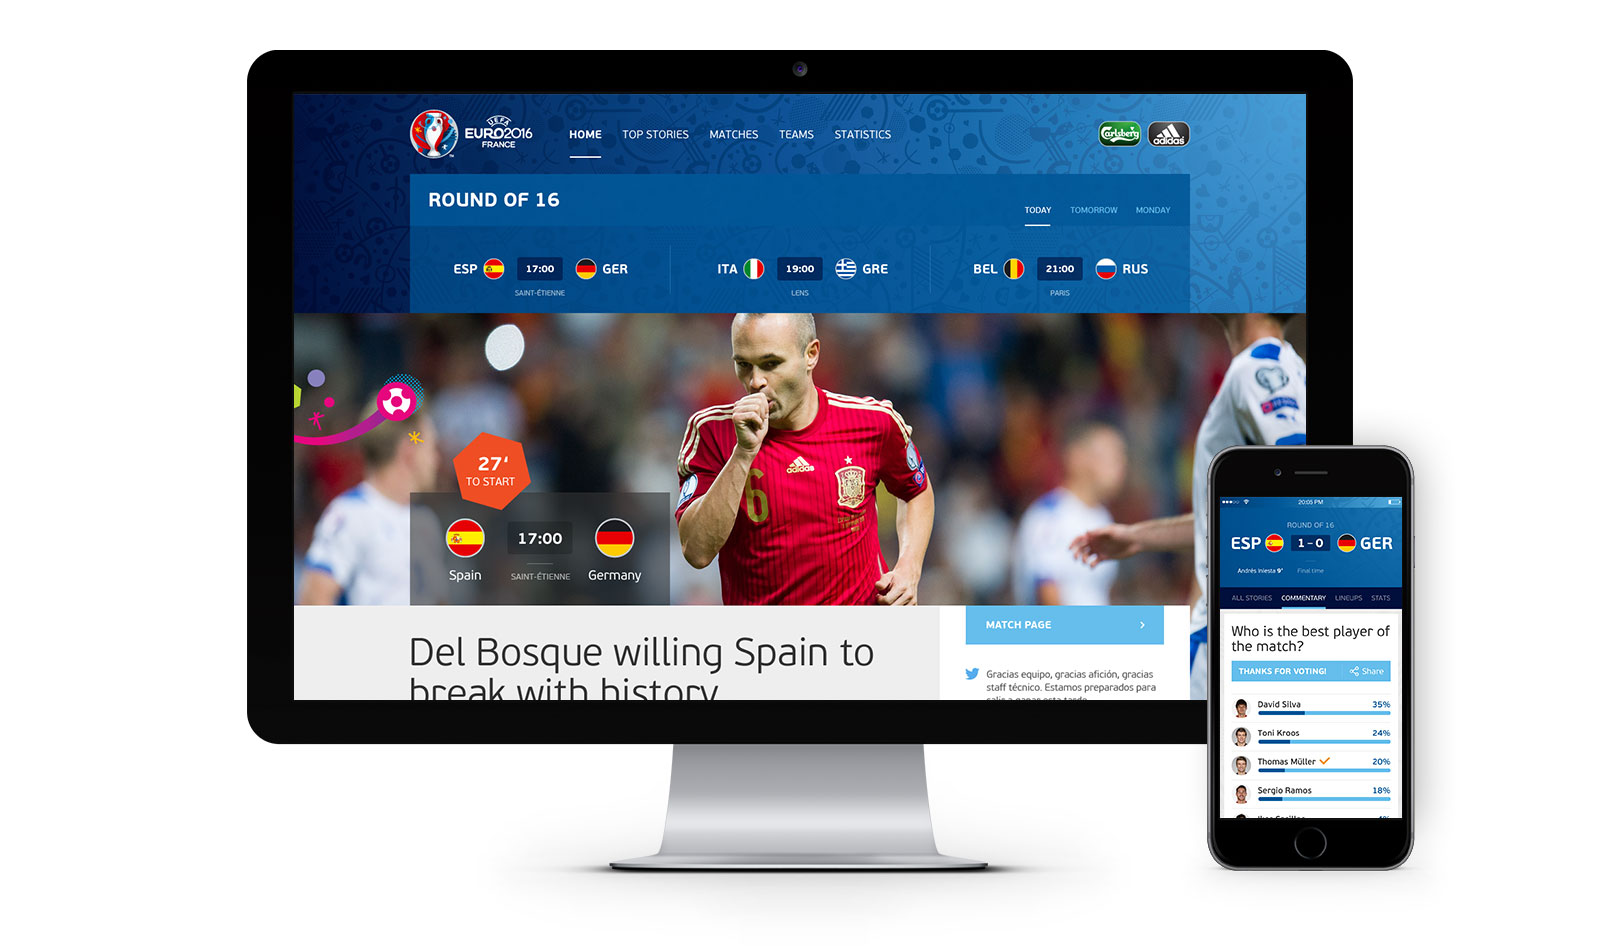 Página inicio de la Euro 2016 y una página de la app